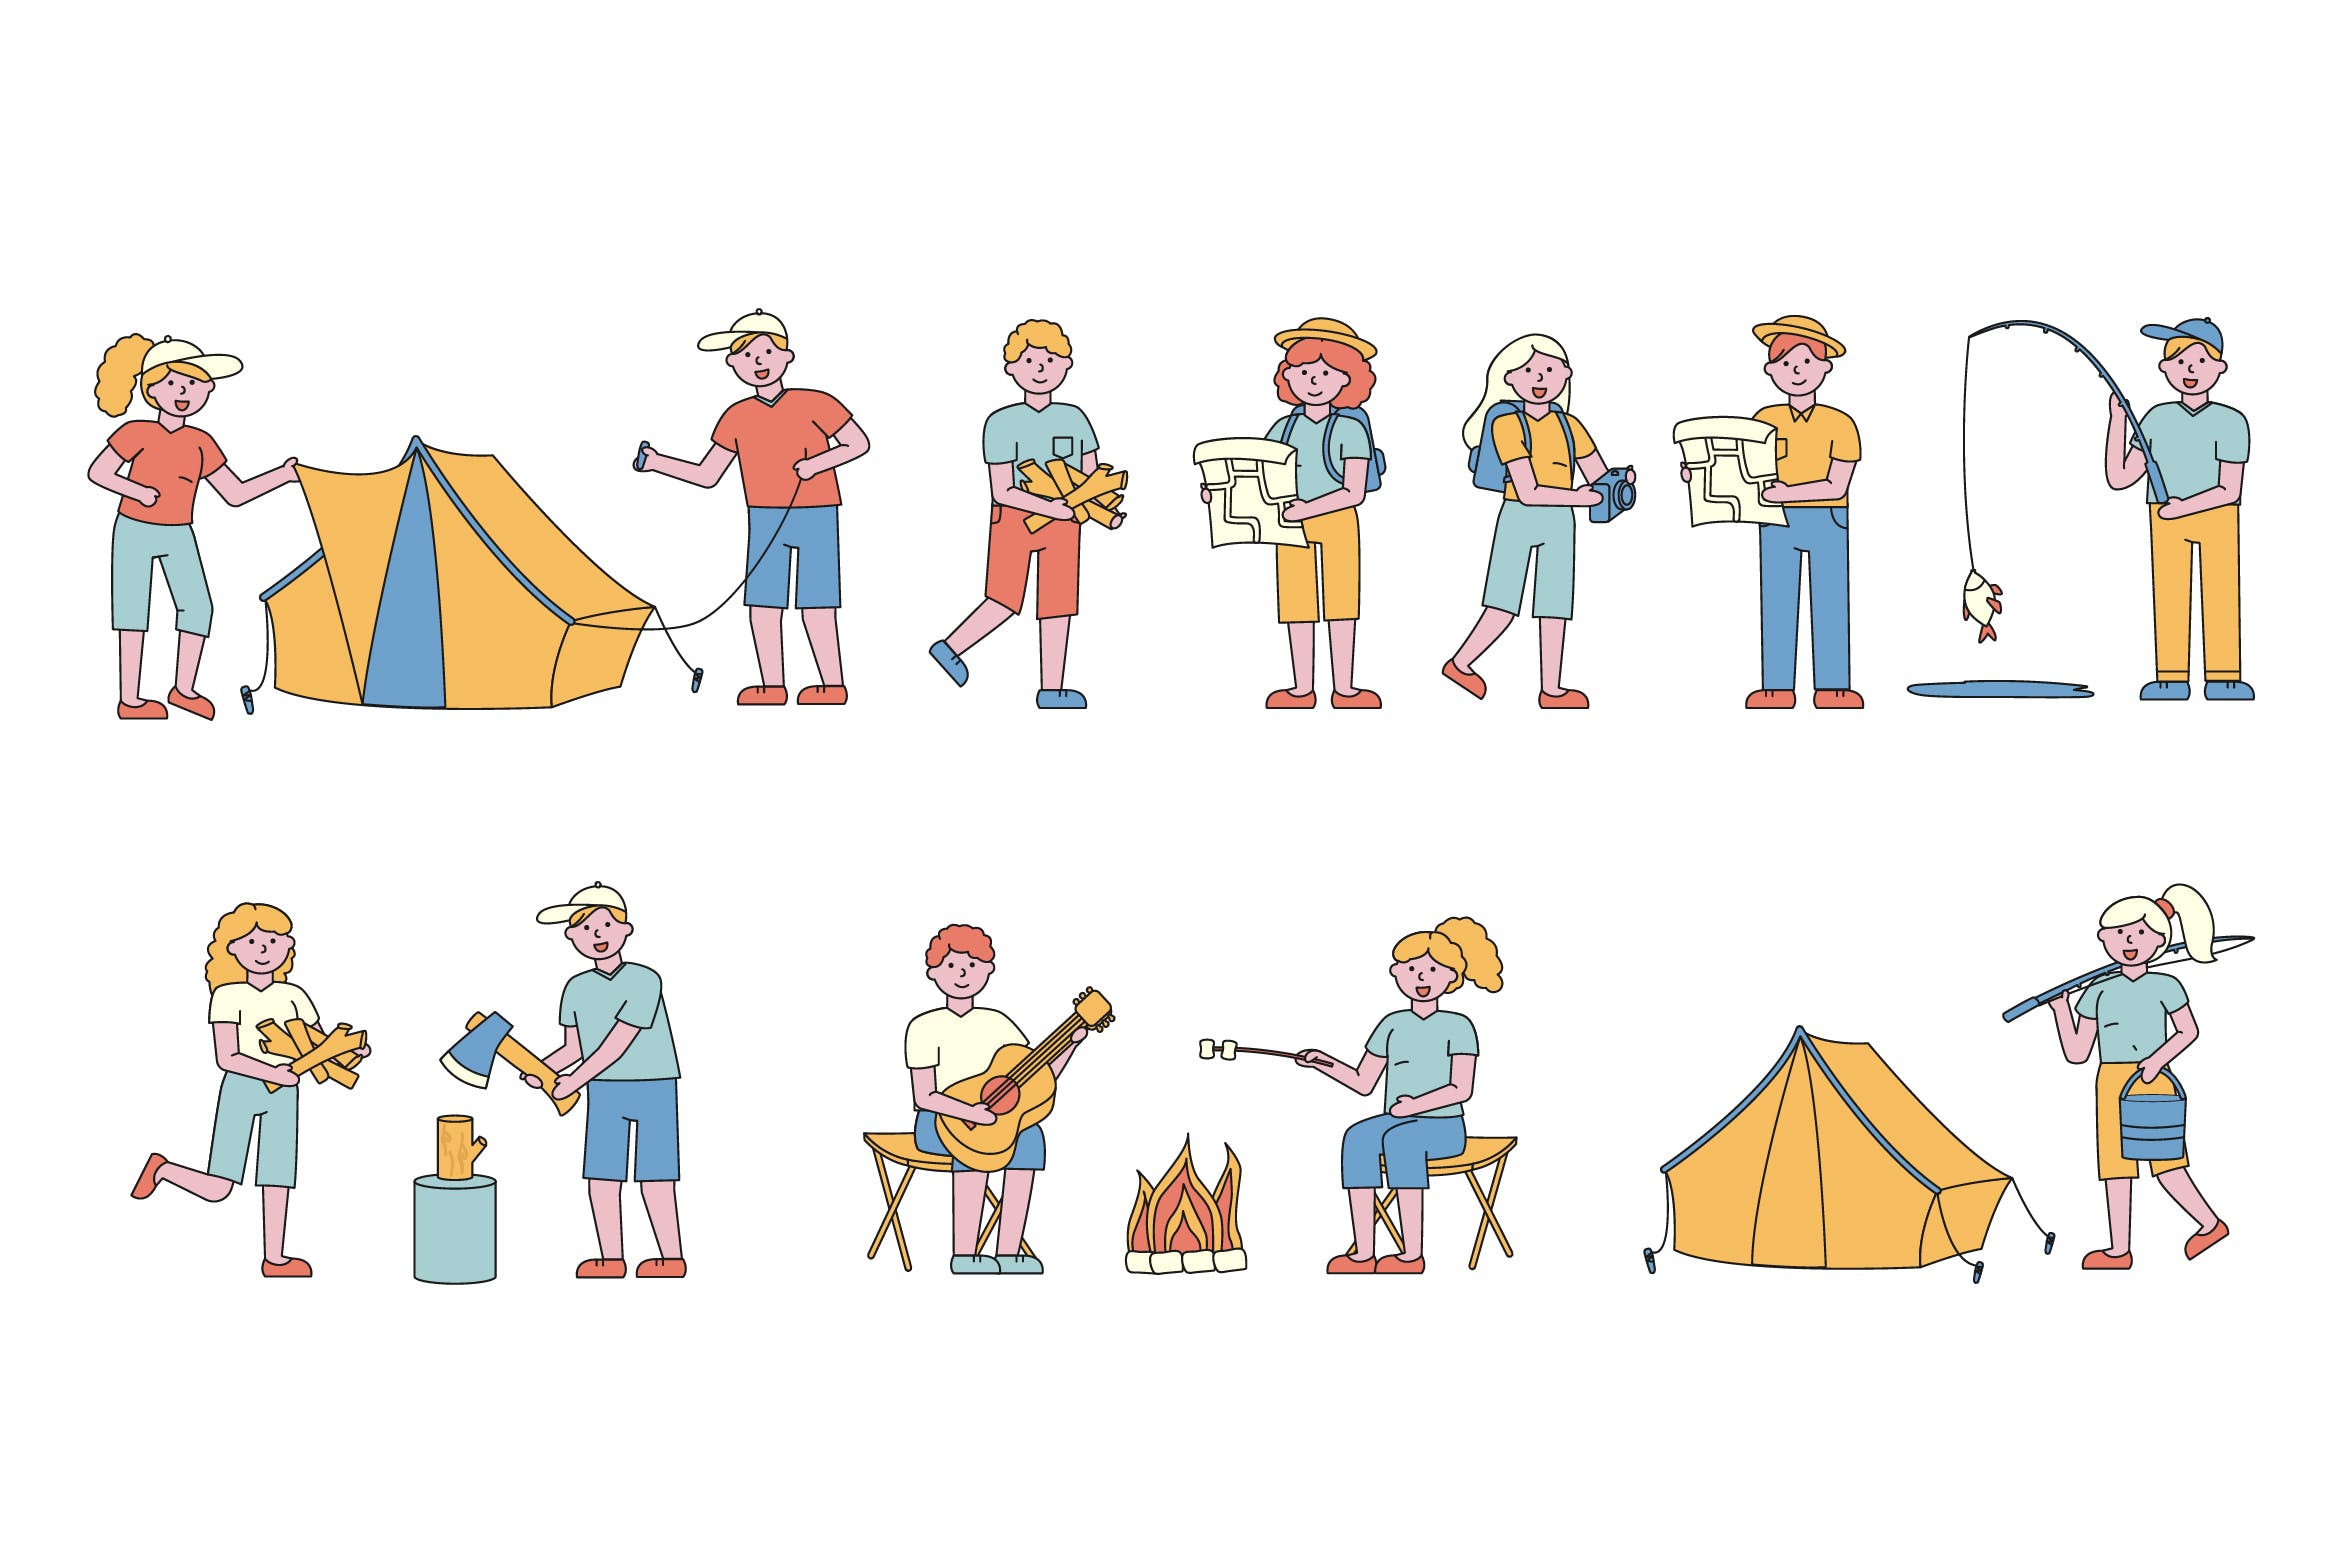 野营户外运动主题人物形象线条艺术矢量插画蚂蚁素材精选素材 Campers Lineart People Character Collection插图